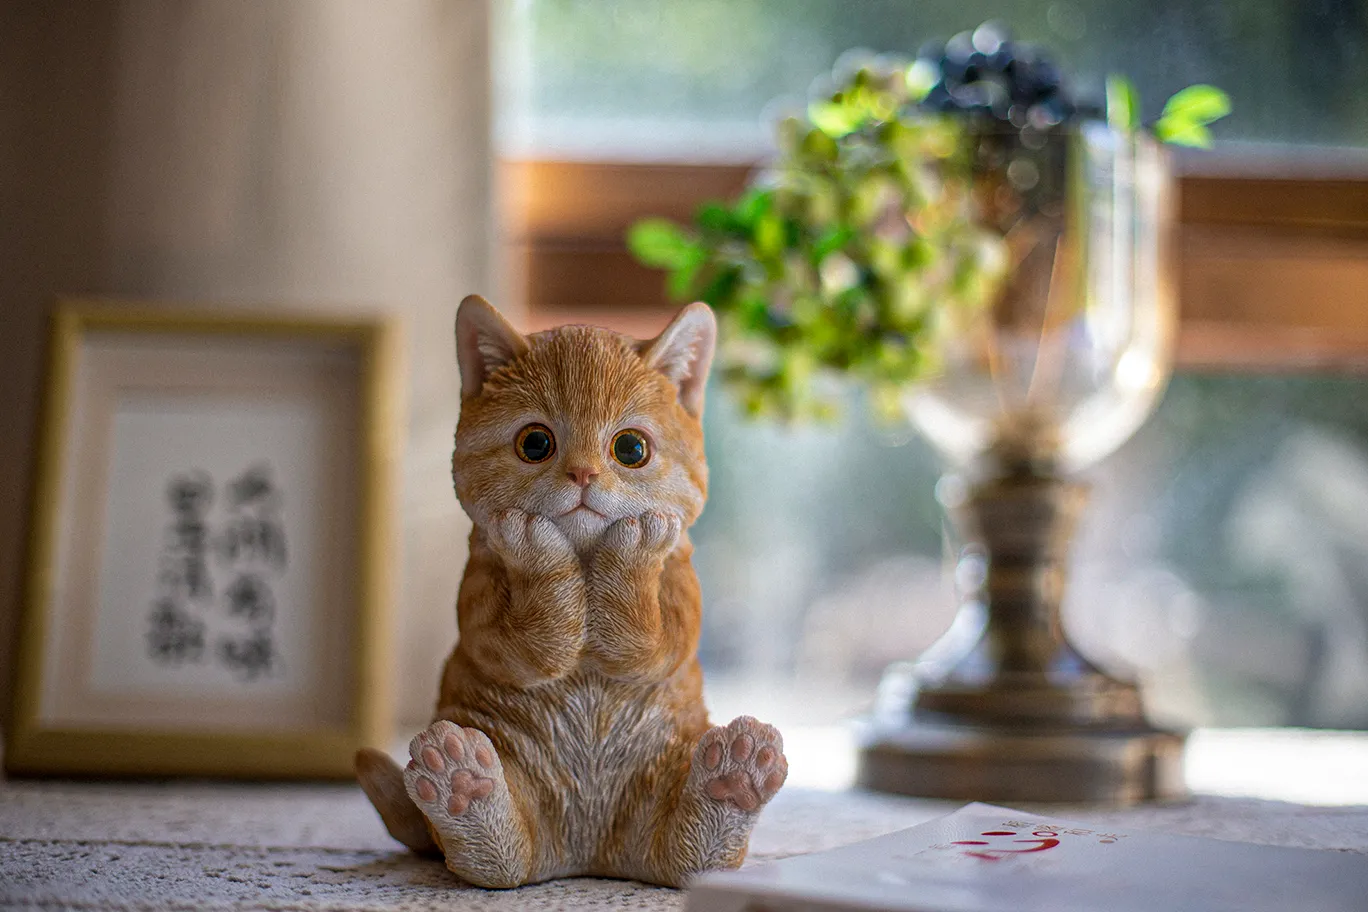 Figurine of a cat